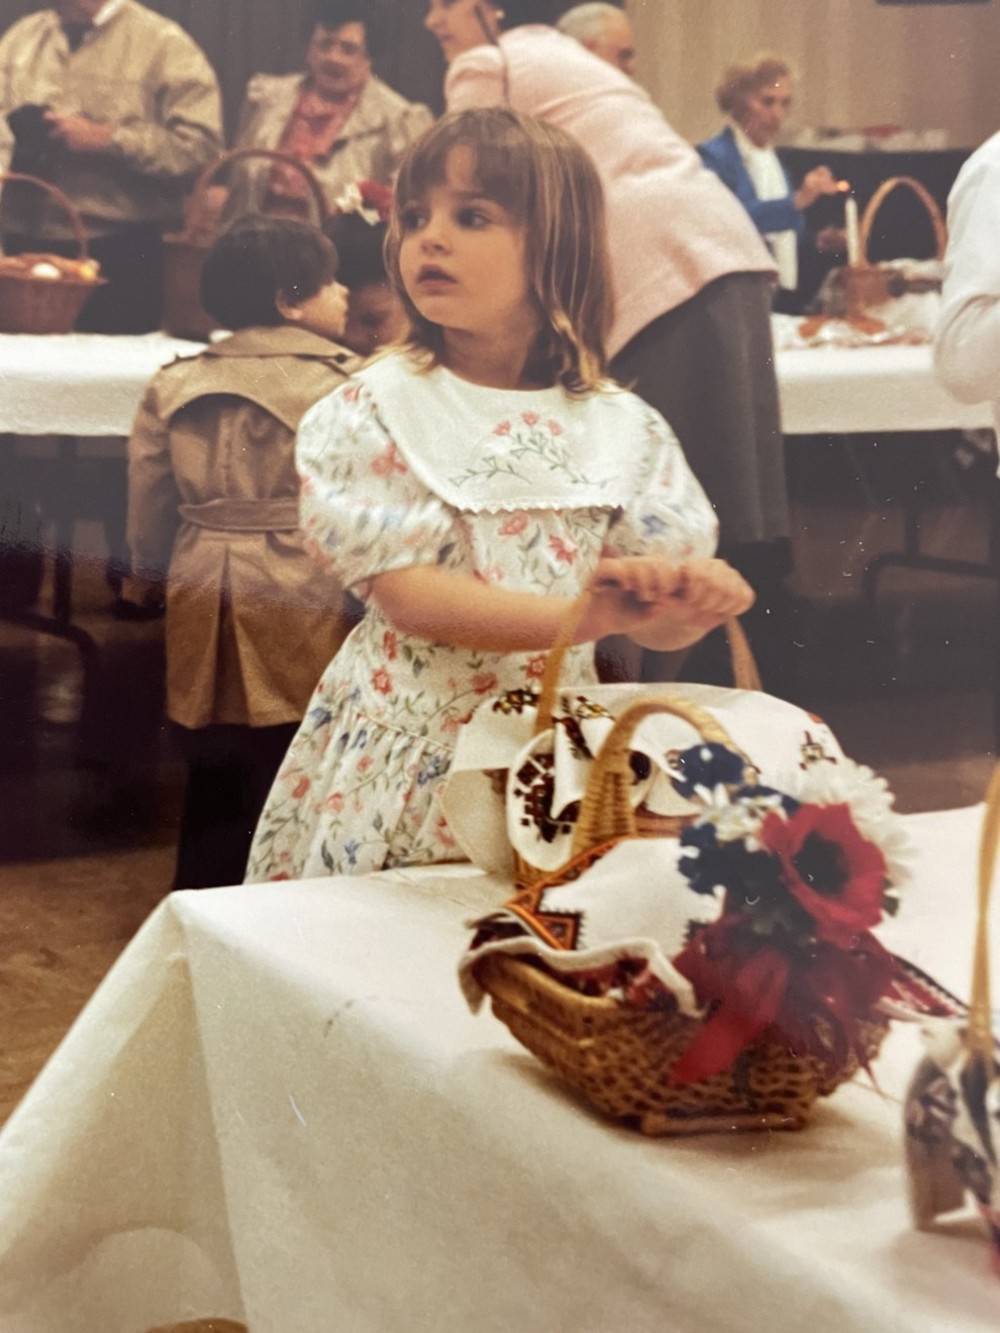 Sophia święci koszyk na Wielkanoc w Nowym Jorku/Fot. archiwum prywatne Sophii Panych